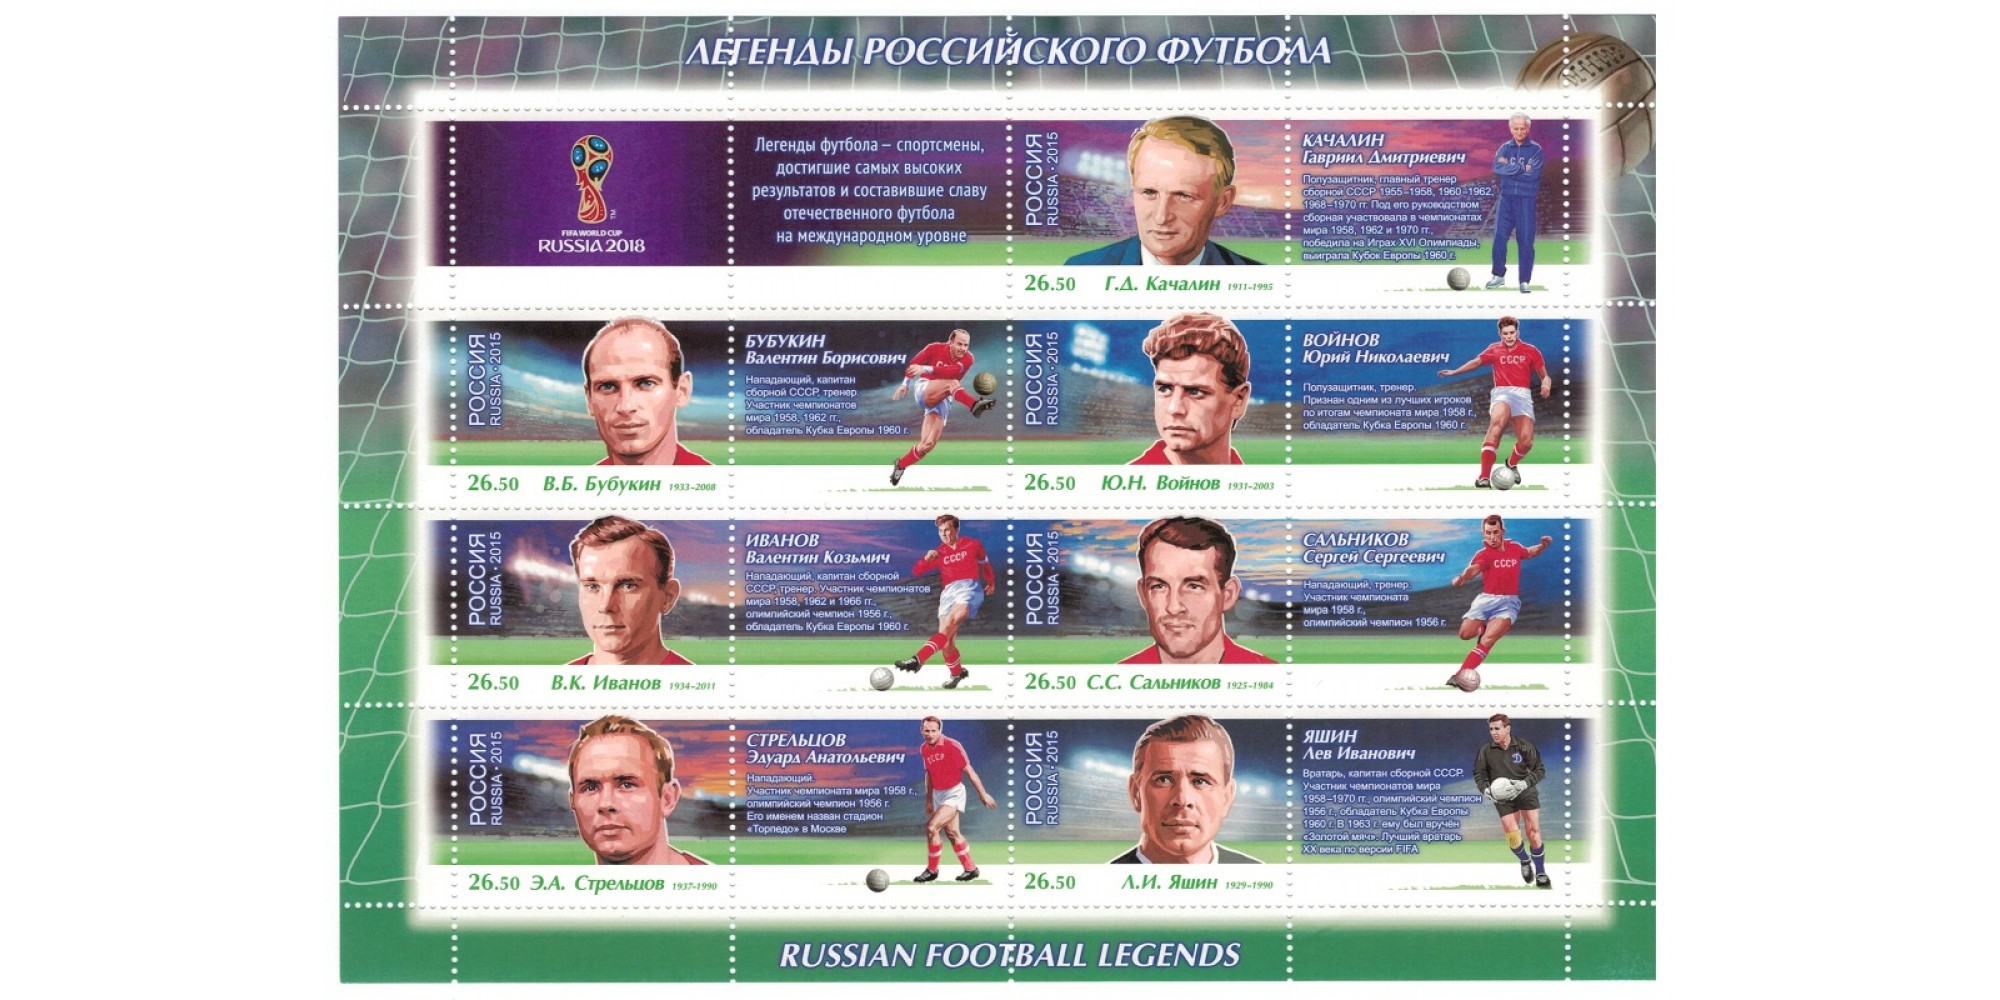 Блок марок Чемпионат мира по футболу FIFA 2018 в России: легенды российского футбола